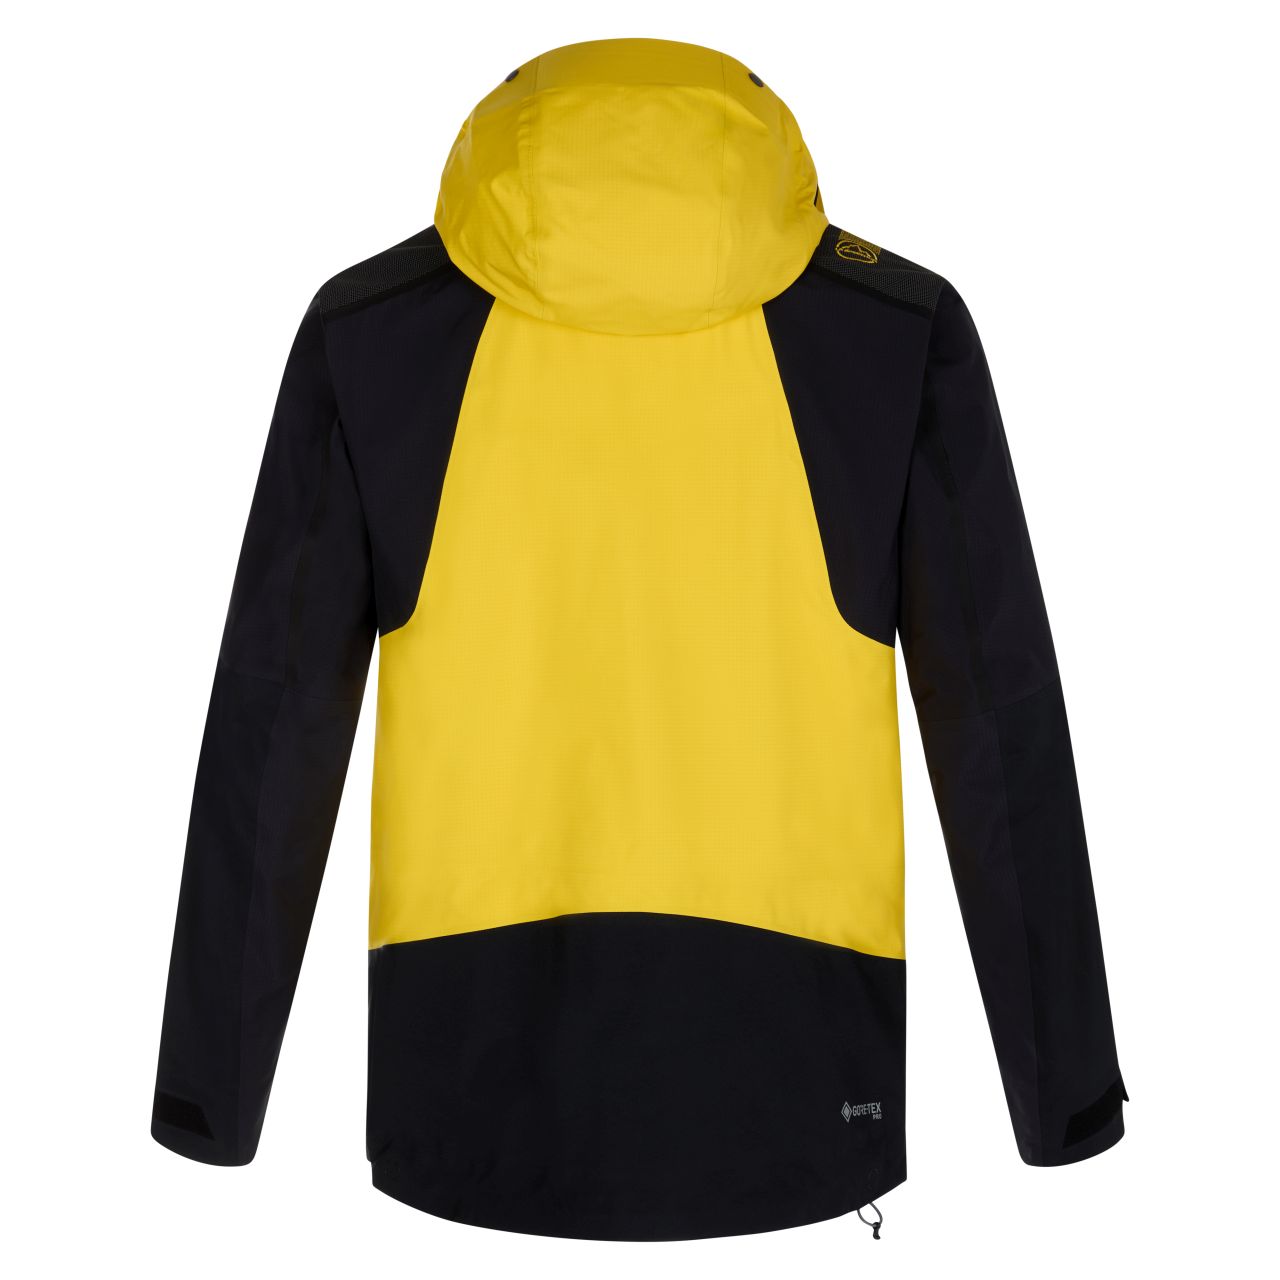 Supercouloir GTX Pro Jacket Man Yellow/Black